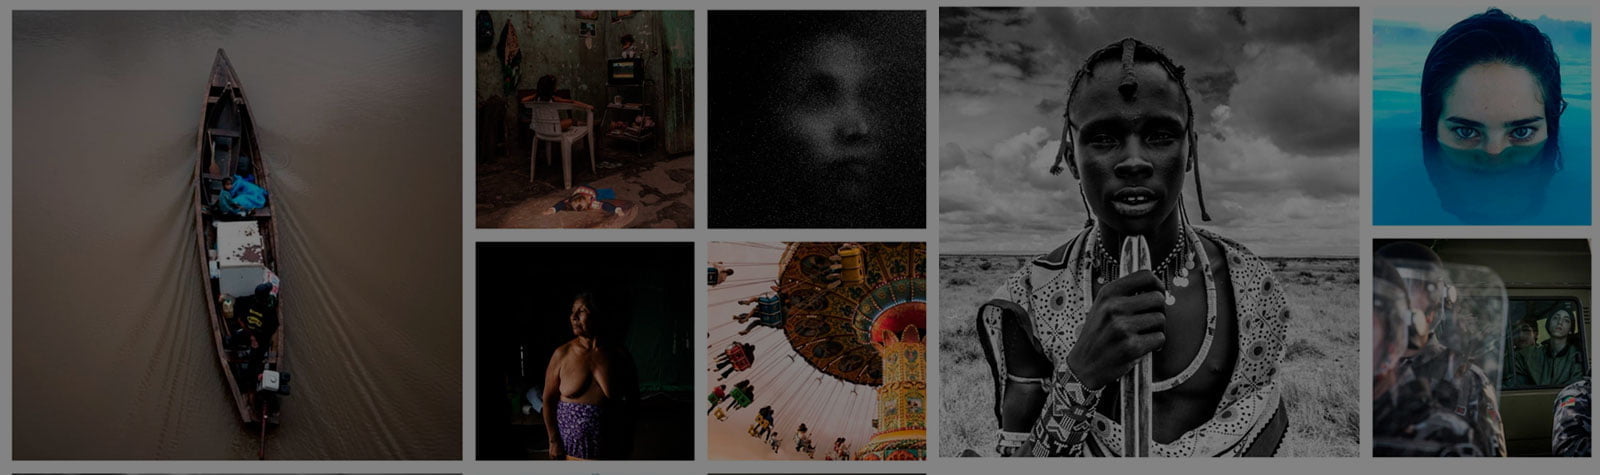 Charla Gratuita: Fotógrafas Latinoamericanas. La era de los proyectos colaborativos | May 2